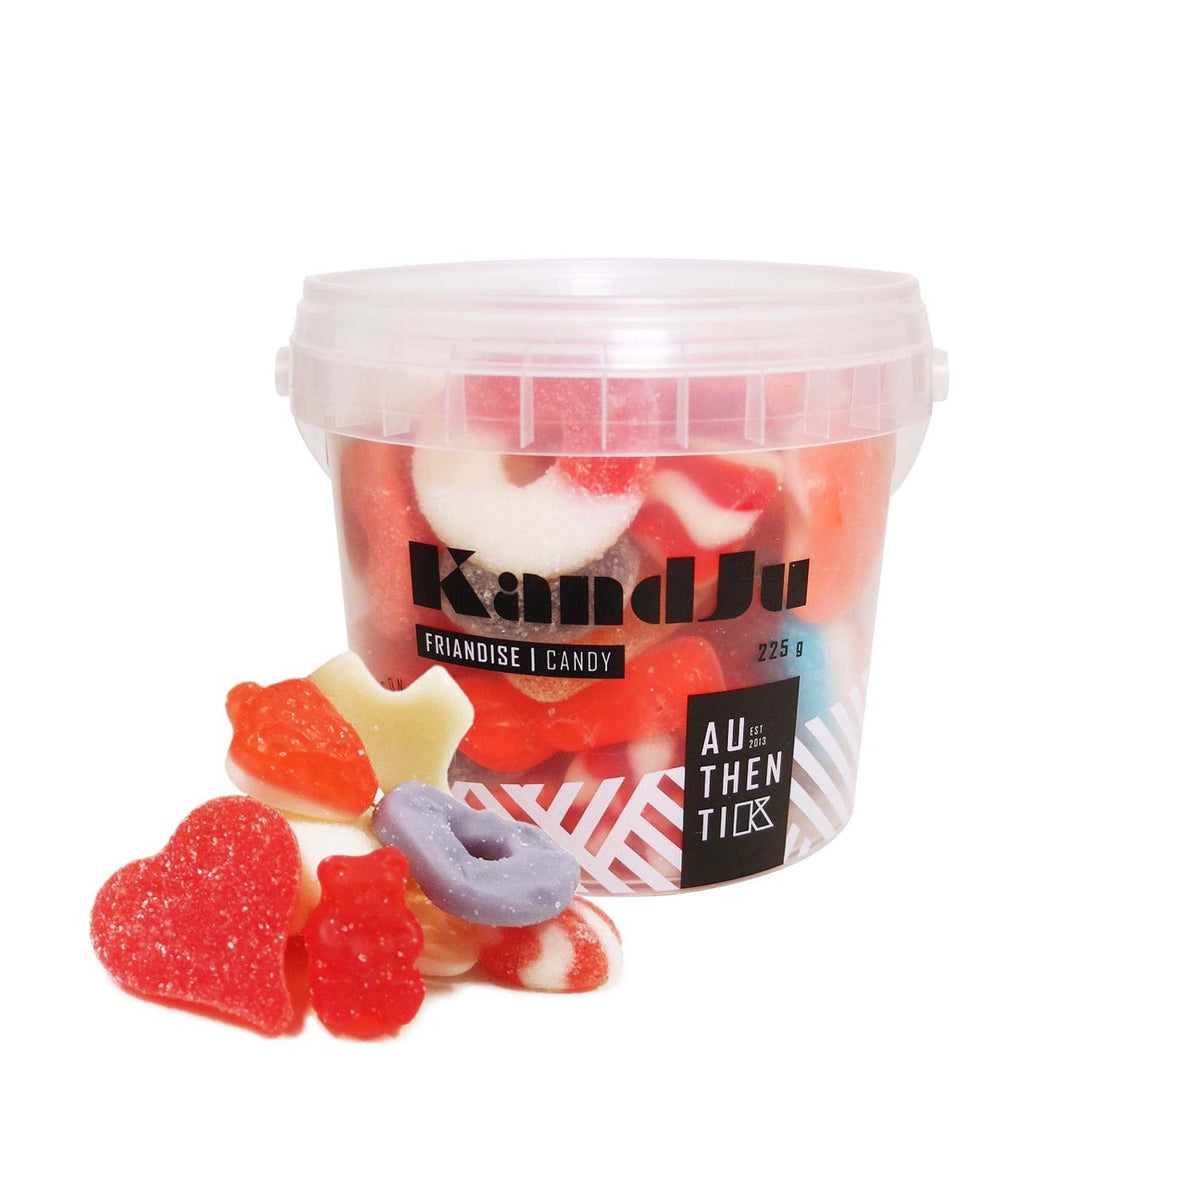 Ludik impulse buying KandJu Valentine Mix Candy Bucket, 225g, 1 Count 809981005581